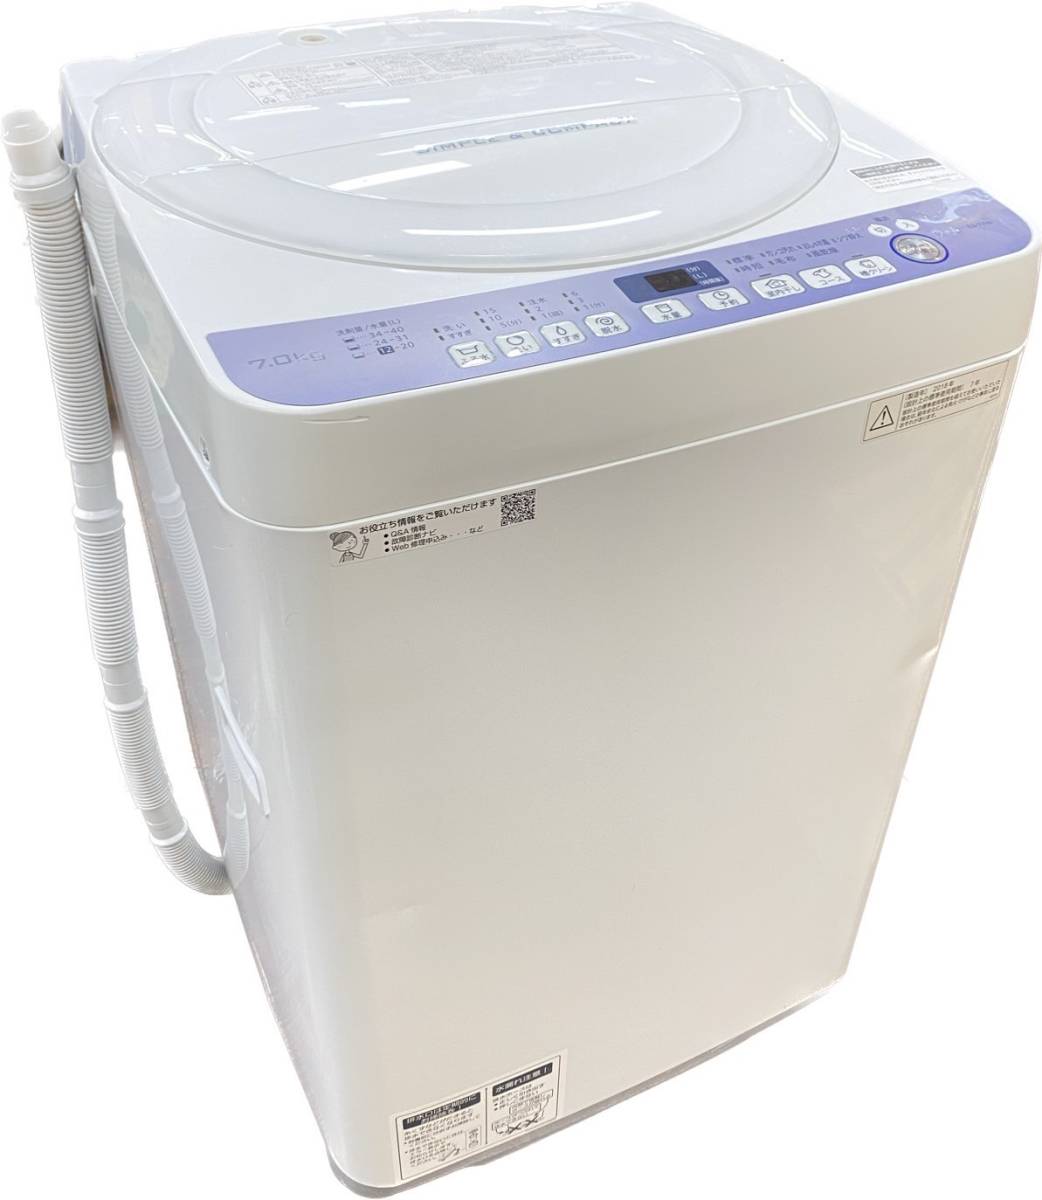 送料無料g24750 SHARP 洗濯7kg 2018年製 縦型 全自動洗濯機 シャープ ES-T710-W ホワイト